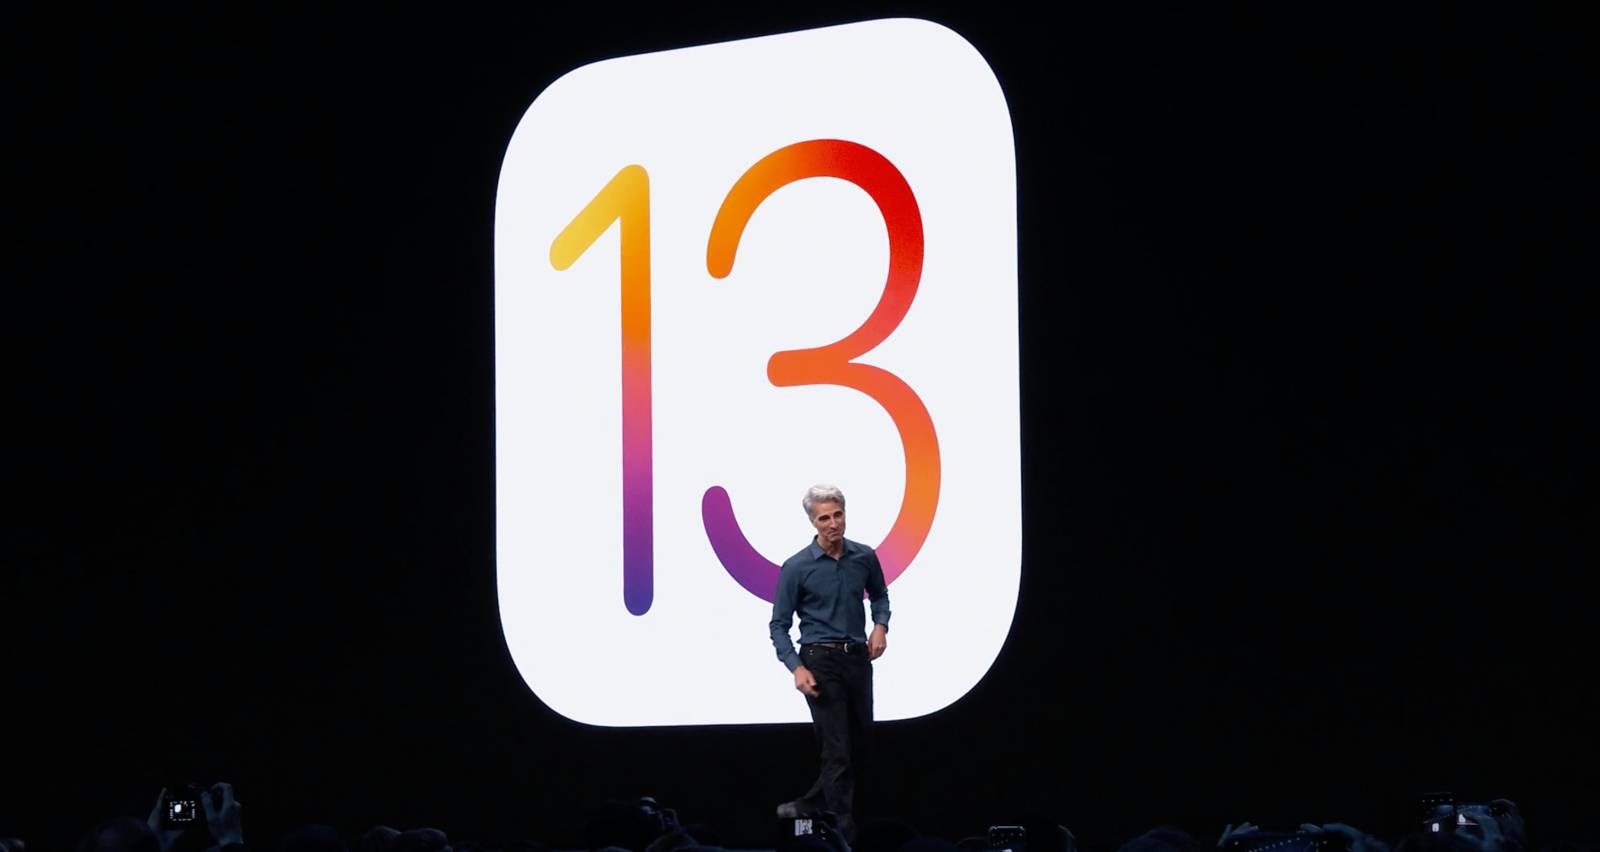 Blokada nieznanego numeru iOS 13 na iPhonie